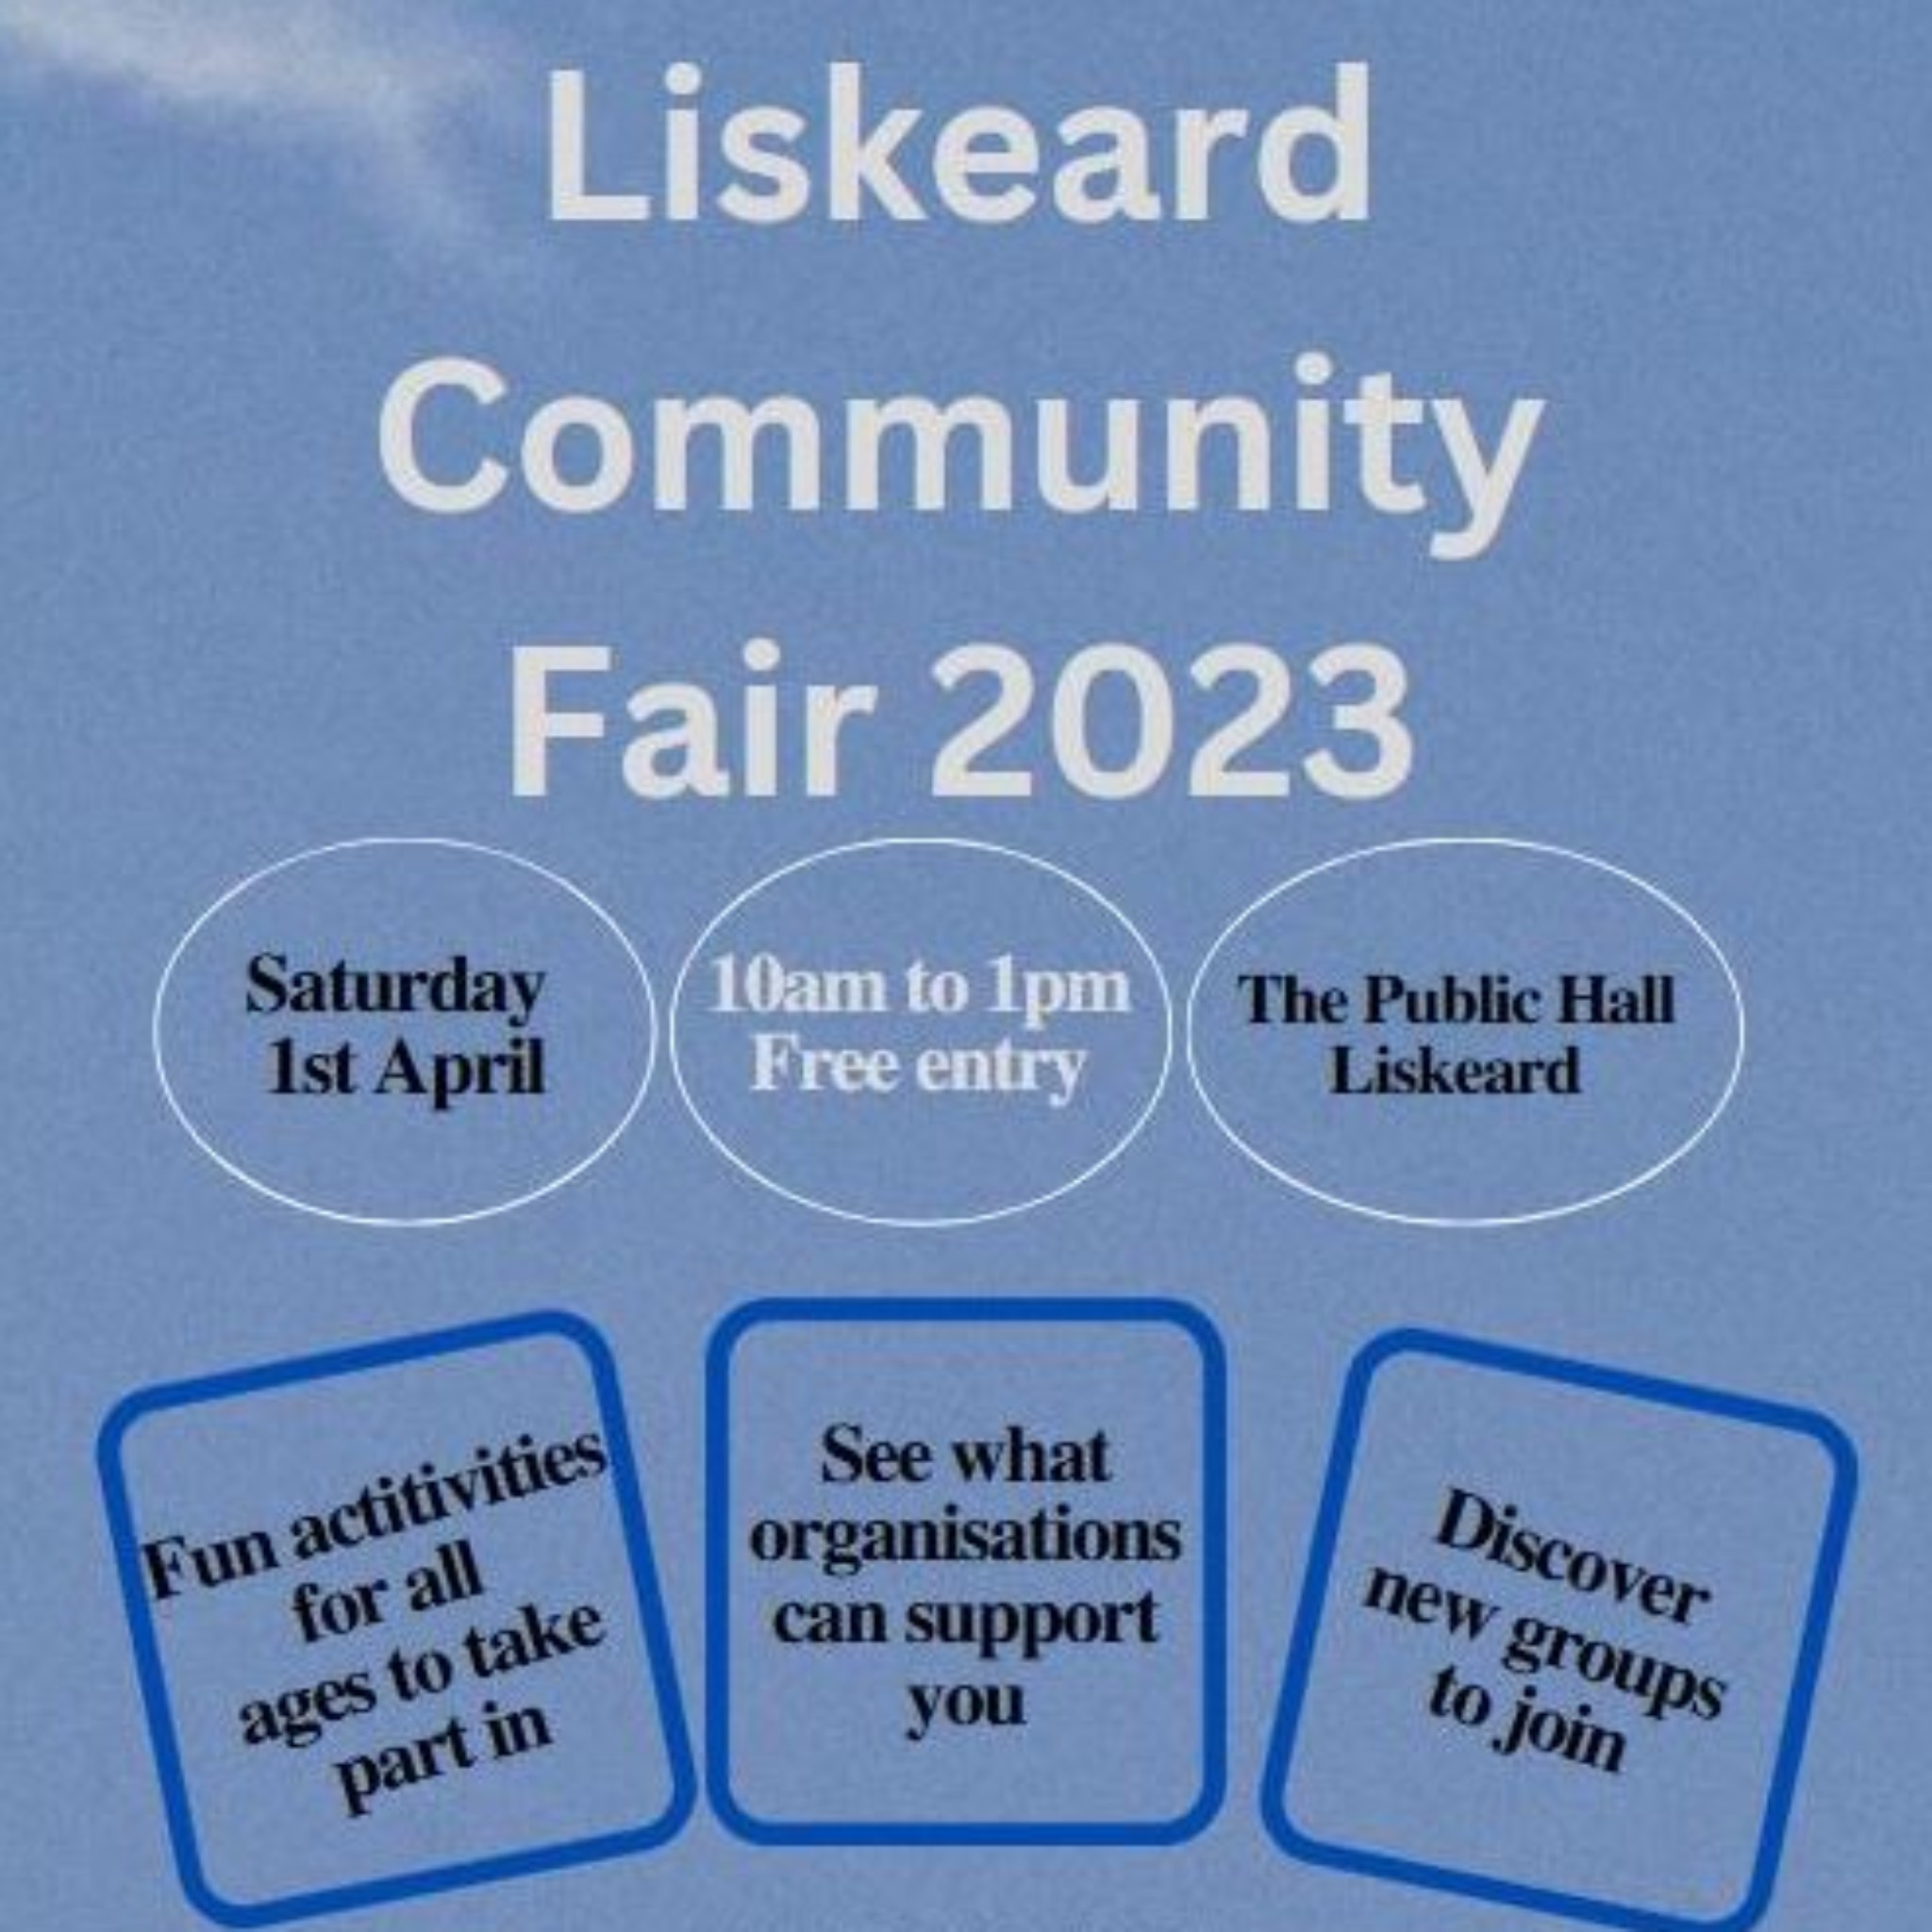 Community Fair Liskeard liskeardvisit 18